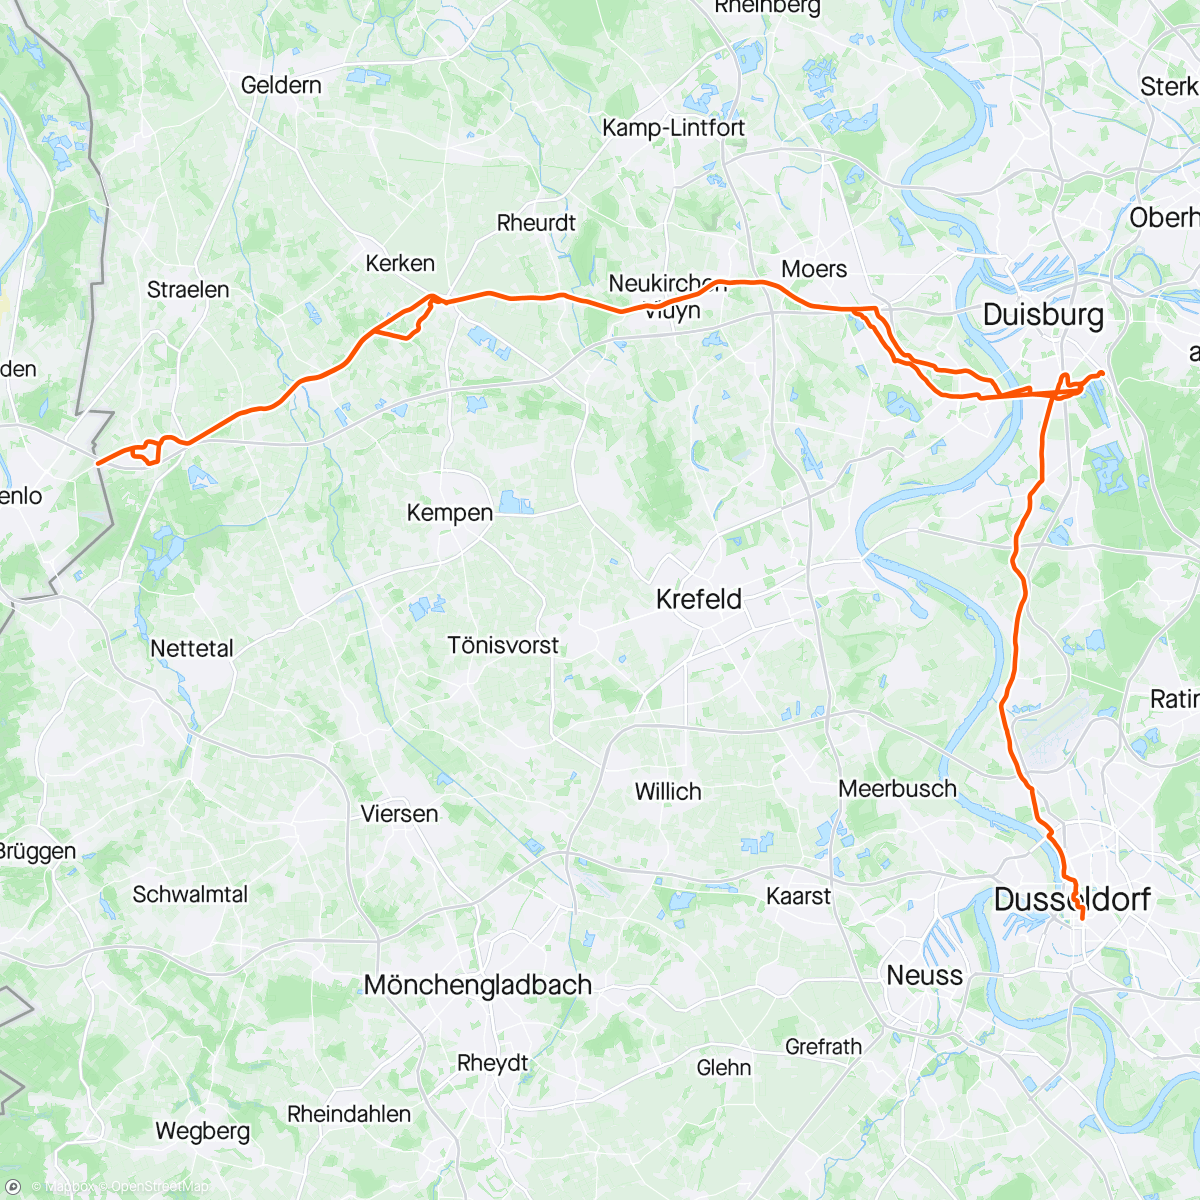 「Crewloop Hinfahrt und Begleitung」活動的地圖